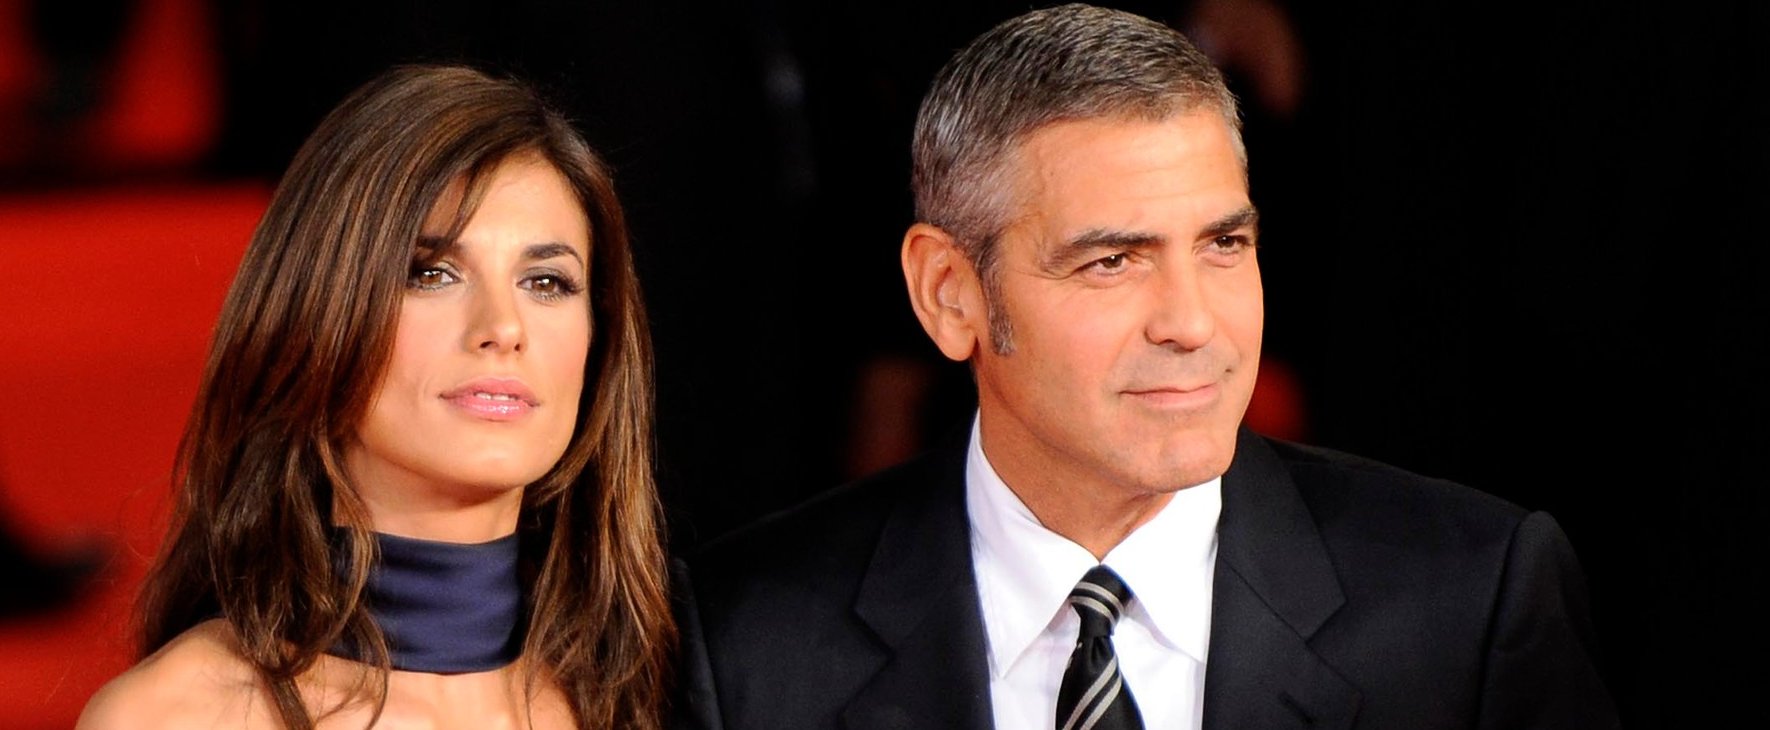 George Clooney exének átlátszó fehérneműje már arcpirítóan kívánatos